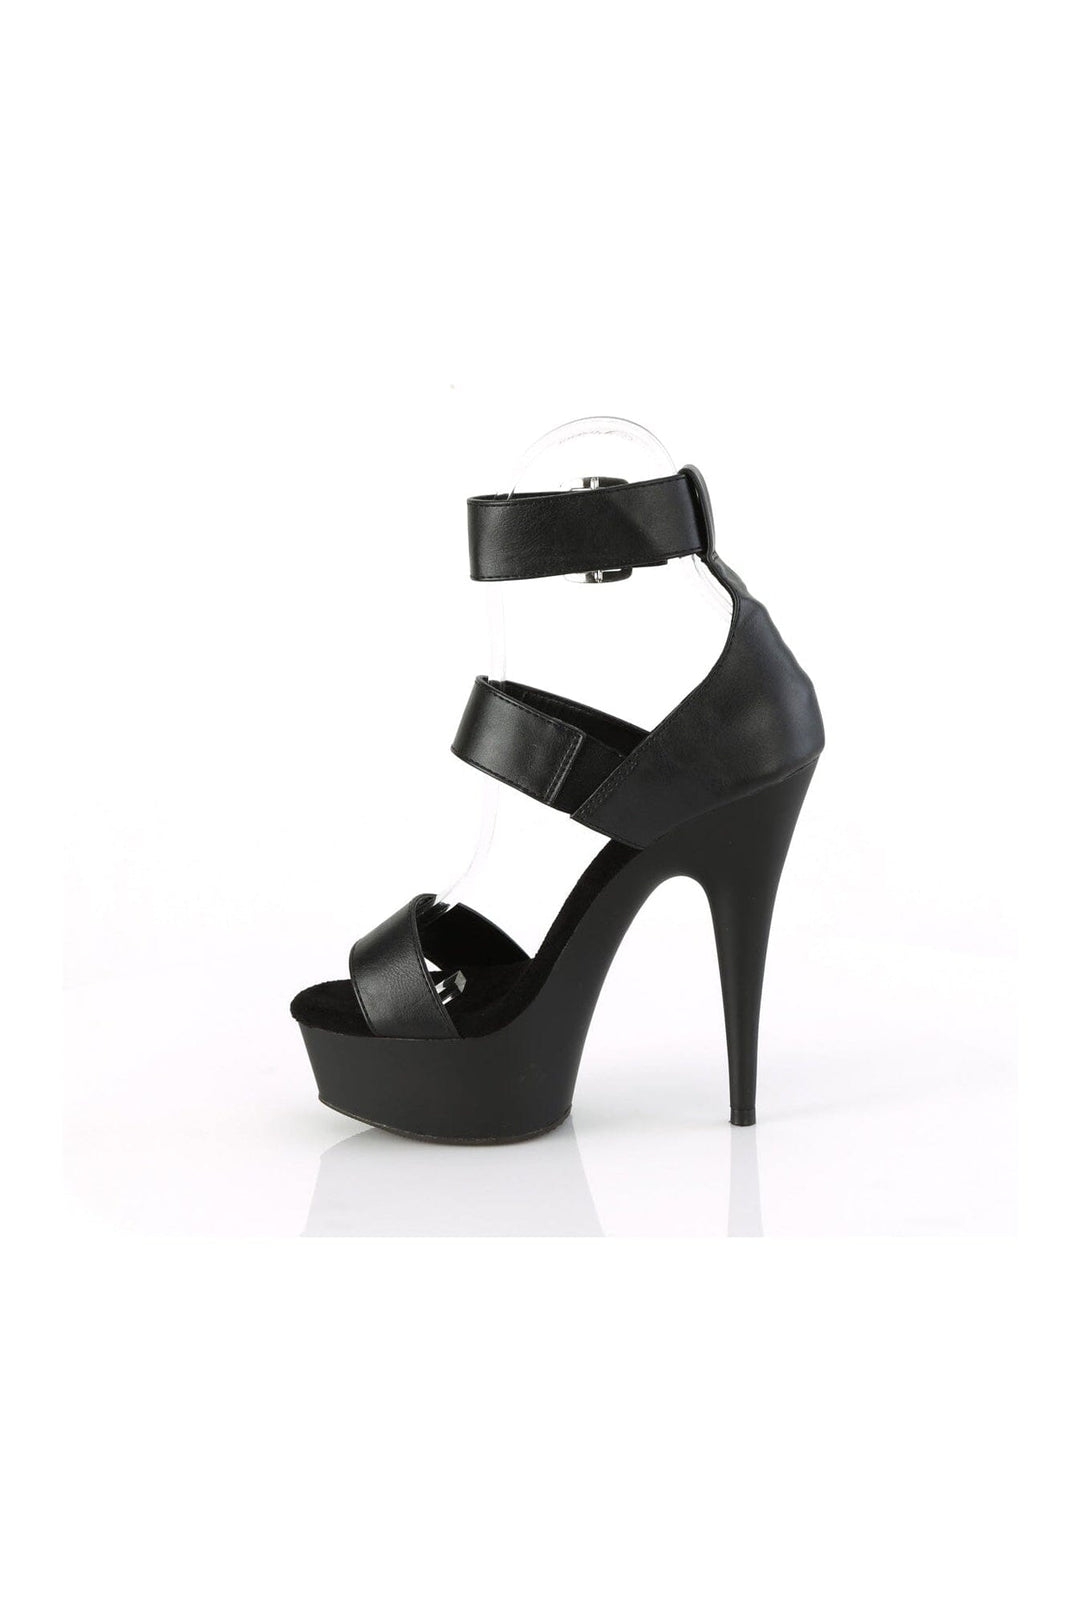 DELIGHT-629 Black Faux Leather Sandal-Sandals-Pleaser-SEXYSHOES.COM